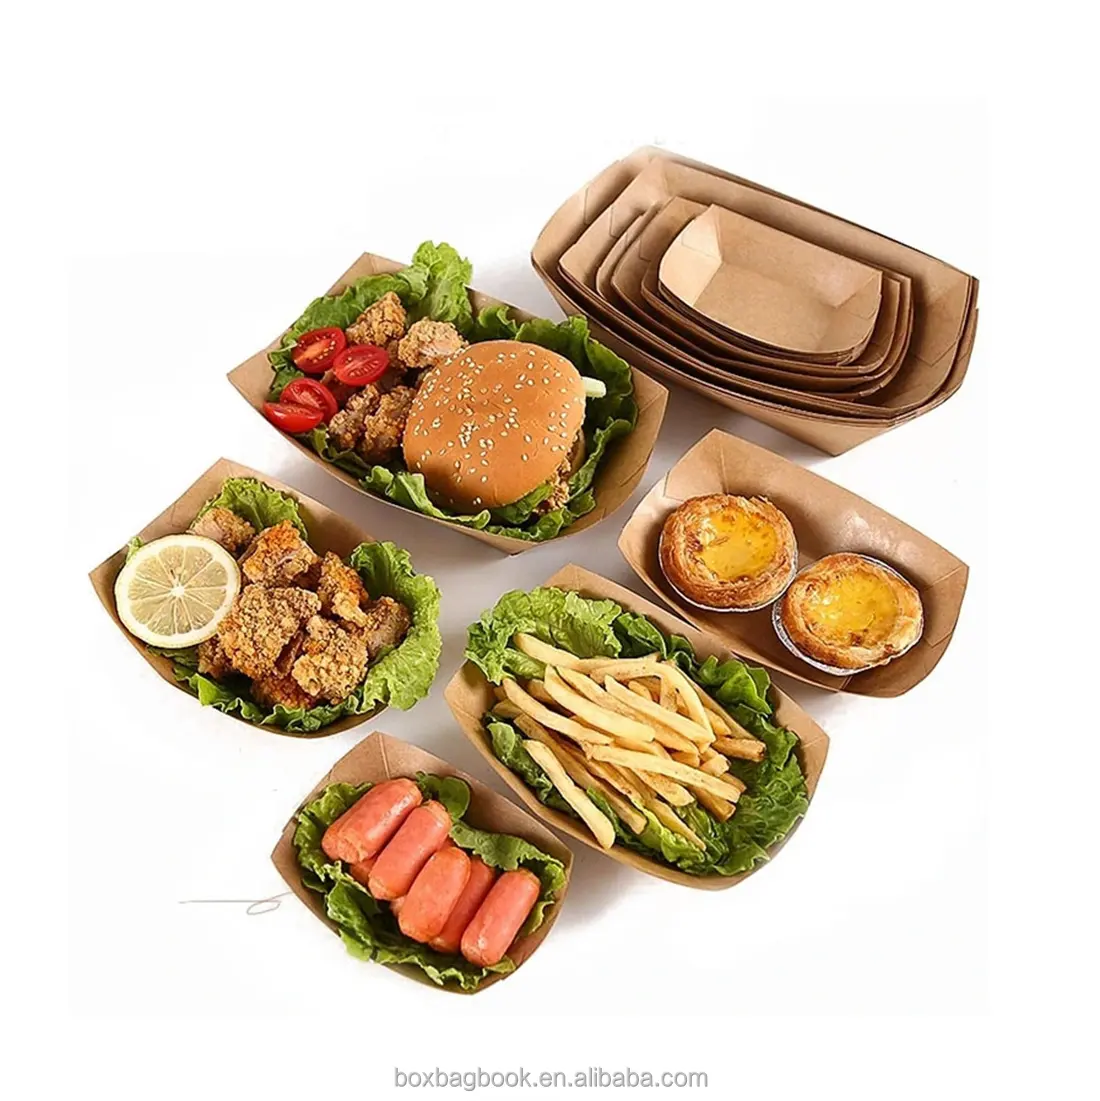 กล่องกระดาษพับซูชิแบบกำหนดเองได้,กล่องสำหรับใส่สลัดเนื้อไก่อาหารแช่แข็งจำนวนสั่งซื้อขั้นต่ำน้อย